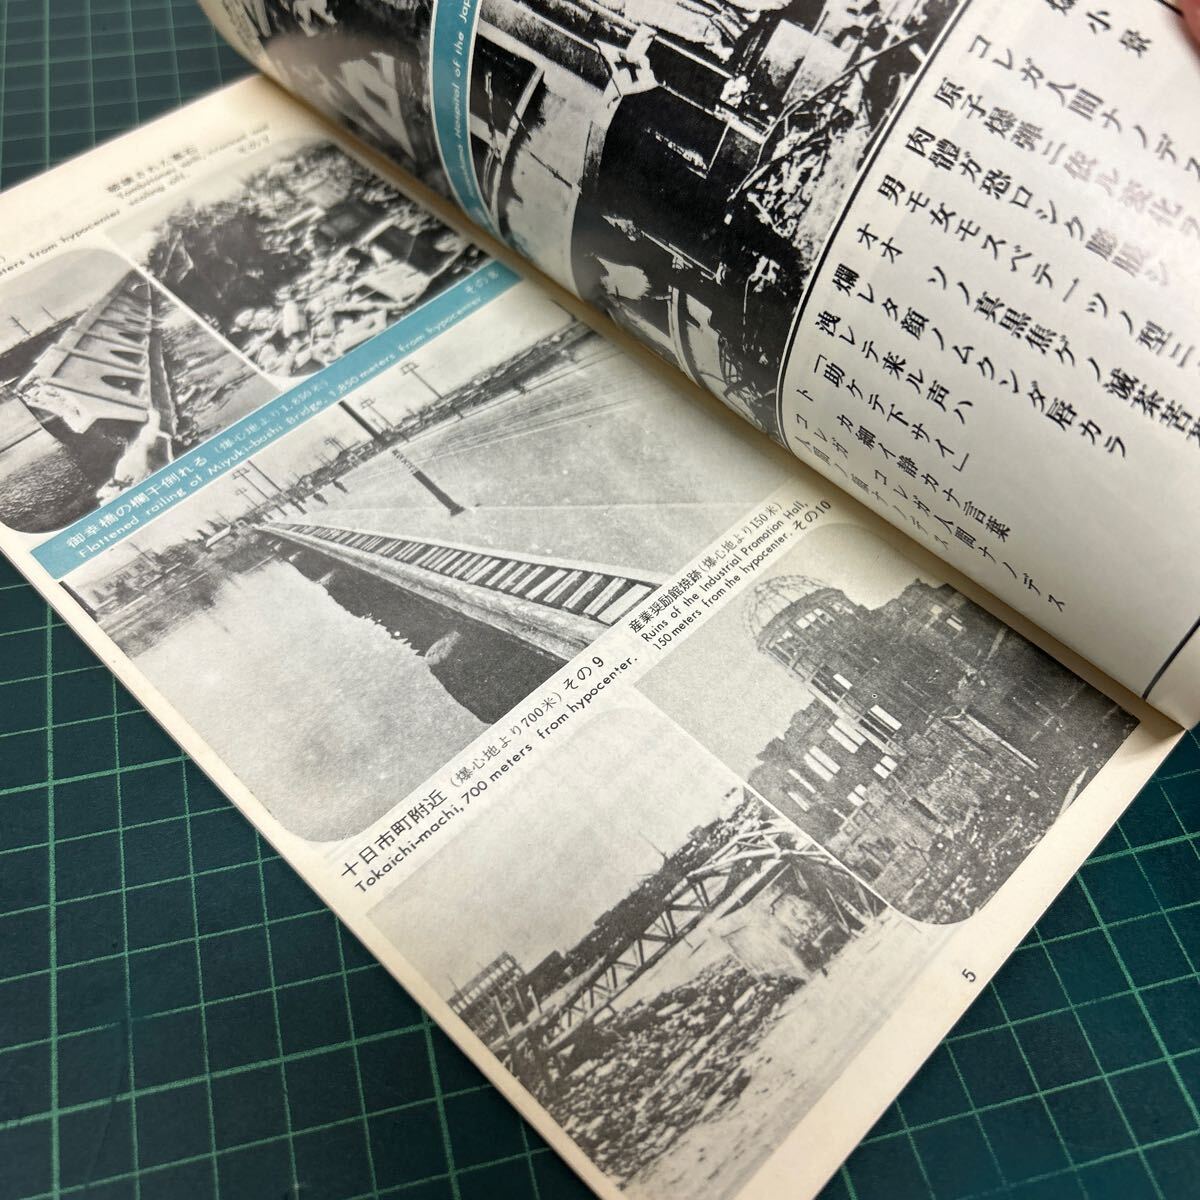 ひろしま その訴え 原爆資料保存会 昭和43年 初版 近代プロモーション 広島 パンフレット 写真資料_画像4